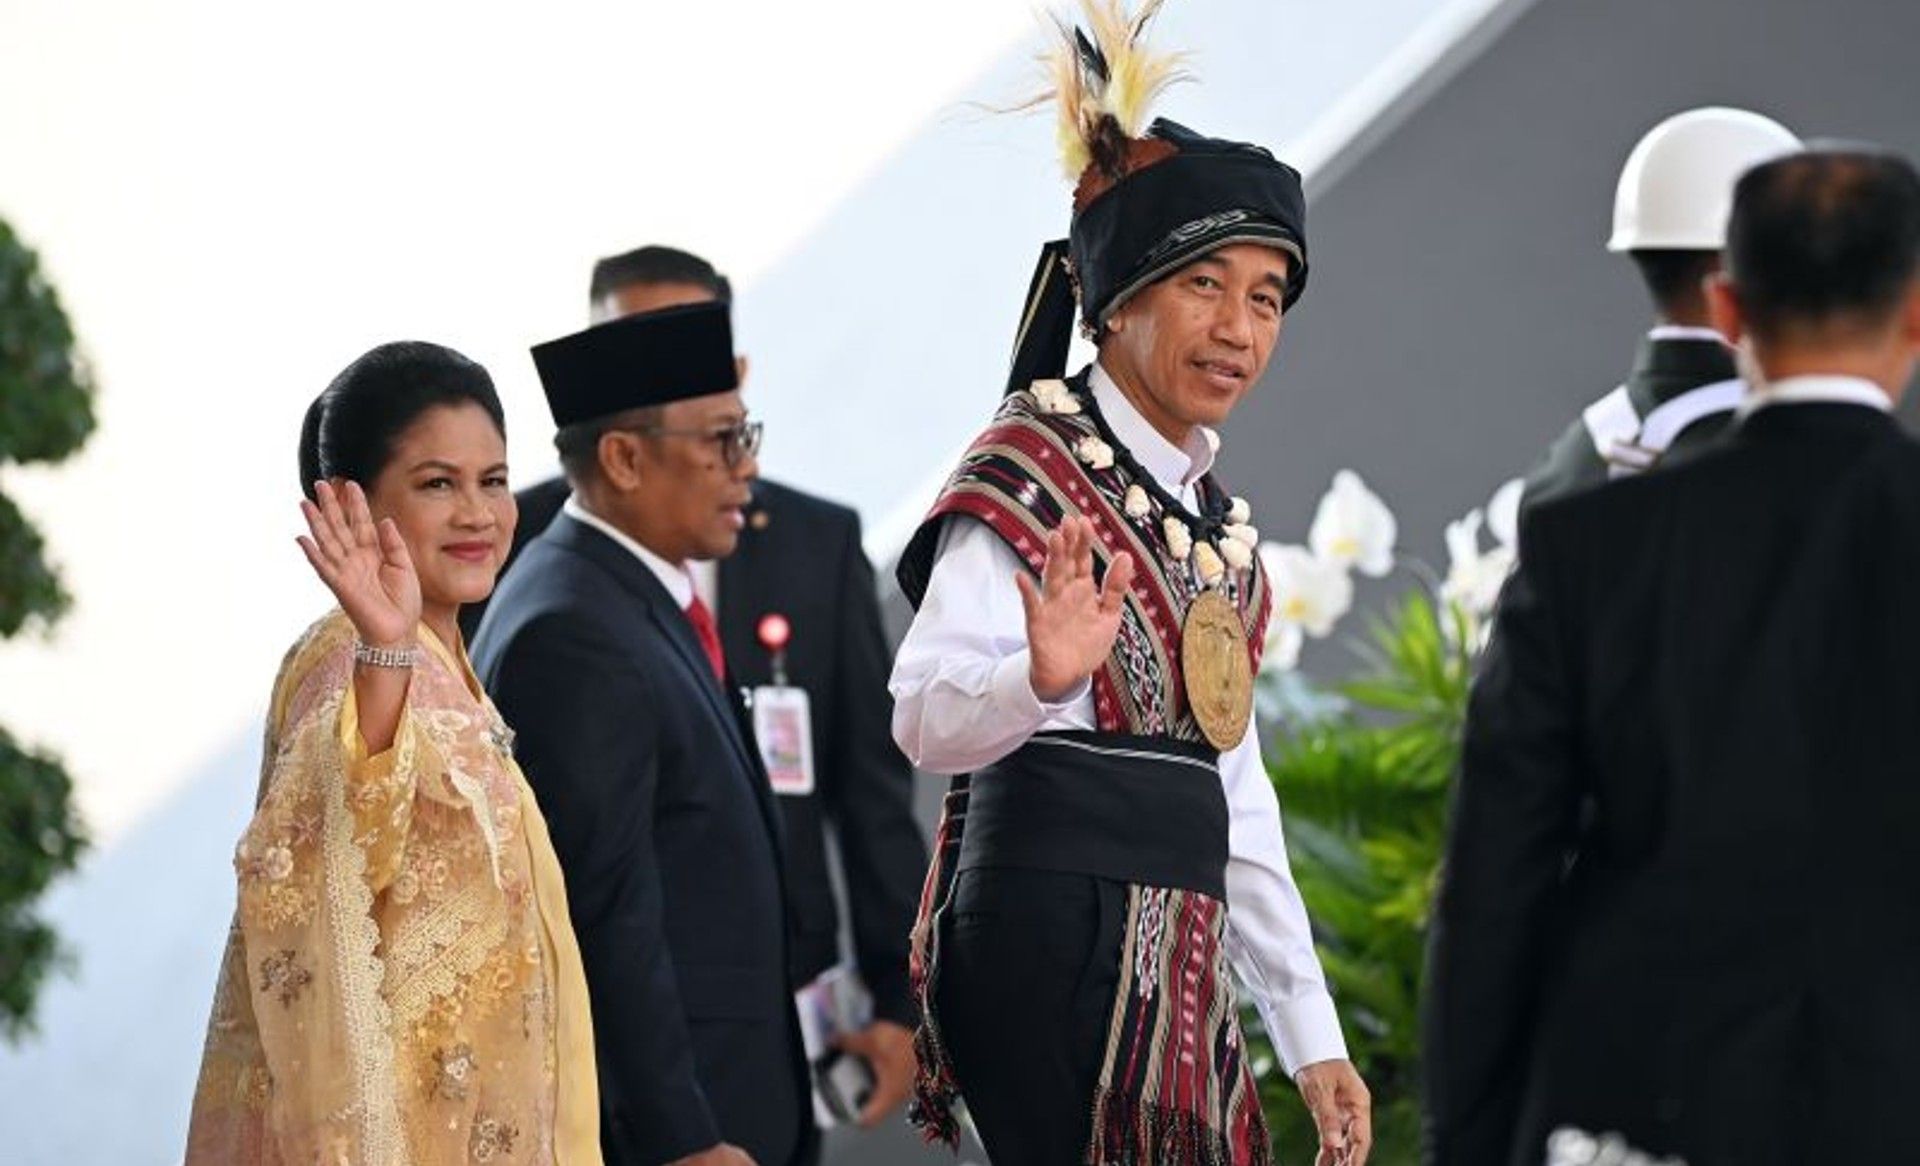 Presiden Joko Widodo mengenakan baju adat dari Tanimbar, Maluku (kanan) didampingi Ibu Iriana Joko Widodo melambaikan tangan saat tiba di lokasi Sidang Tahunan MPR dan Sidang Bersama DPR - DPD Tahun 2023